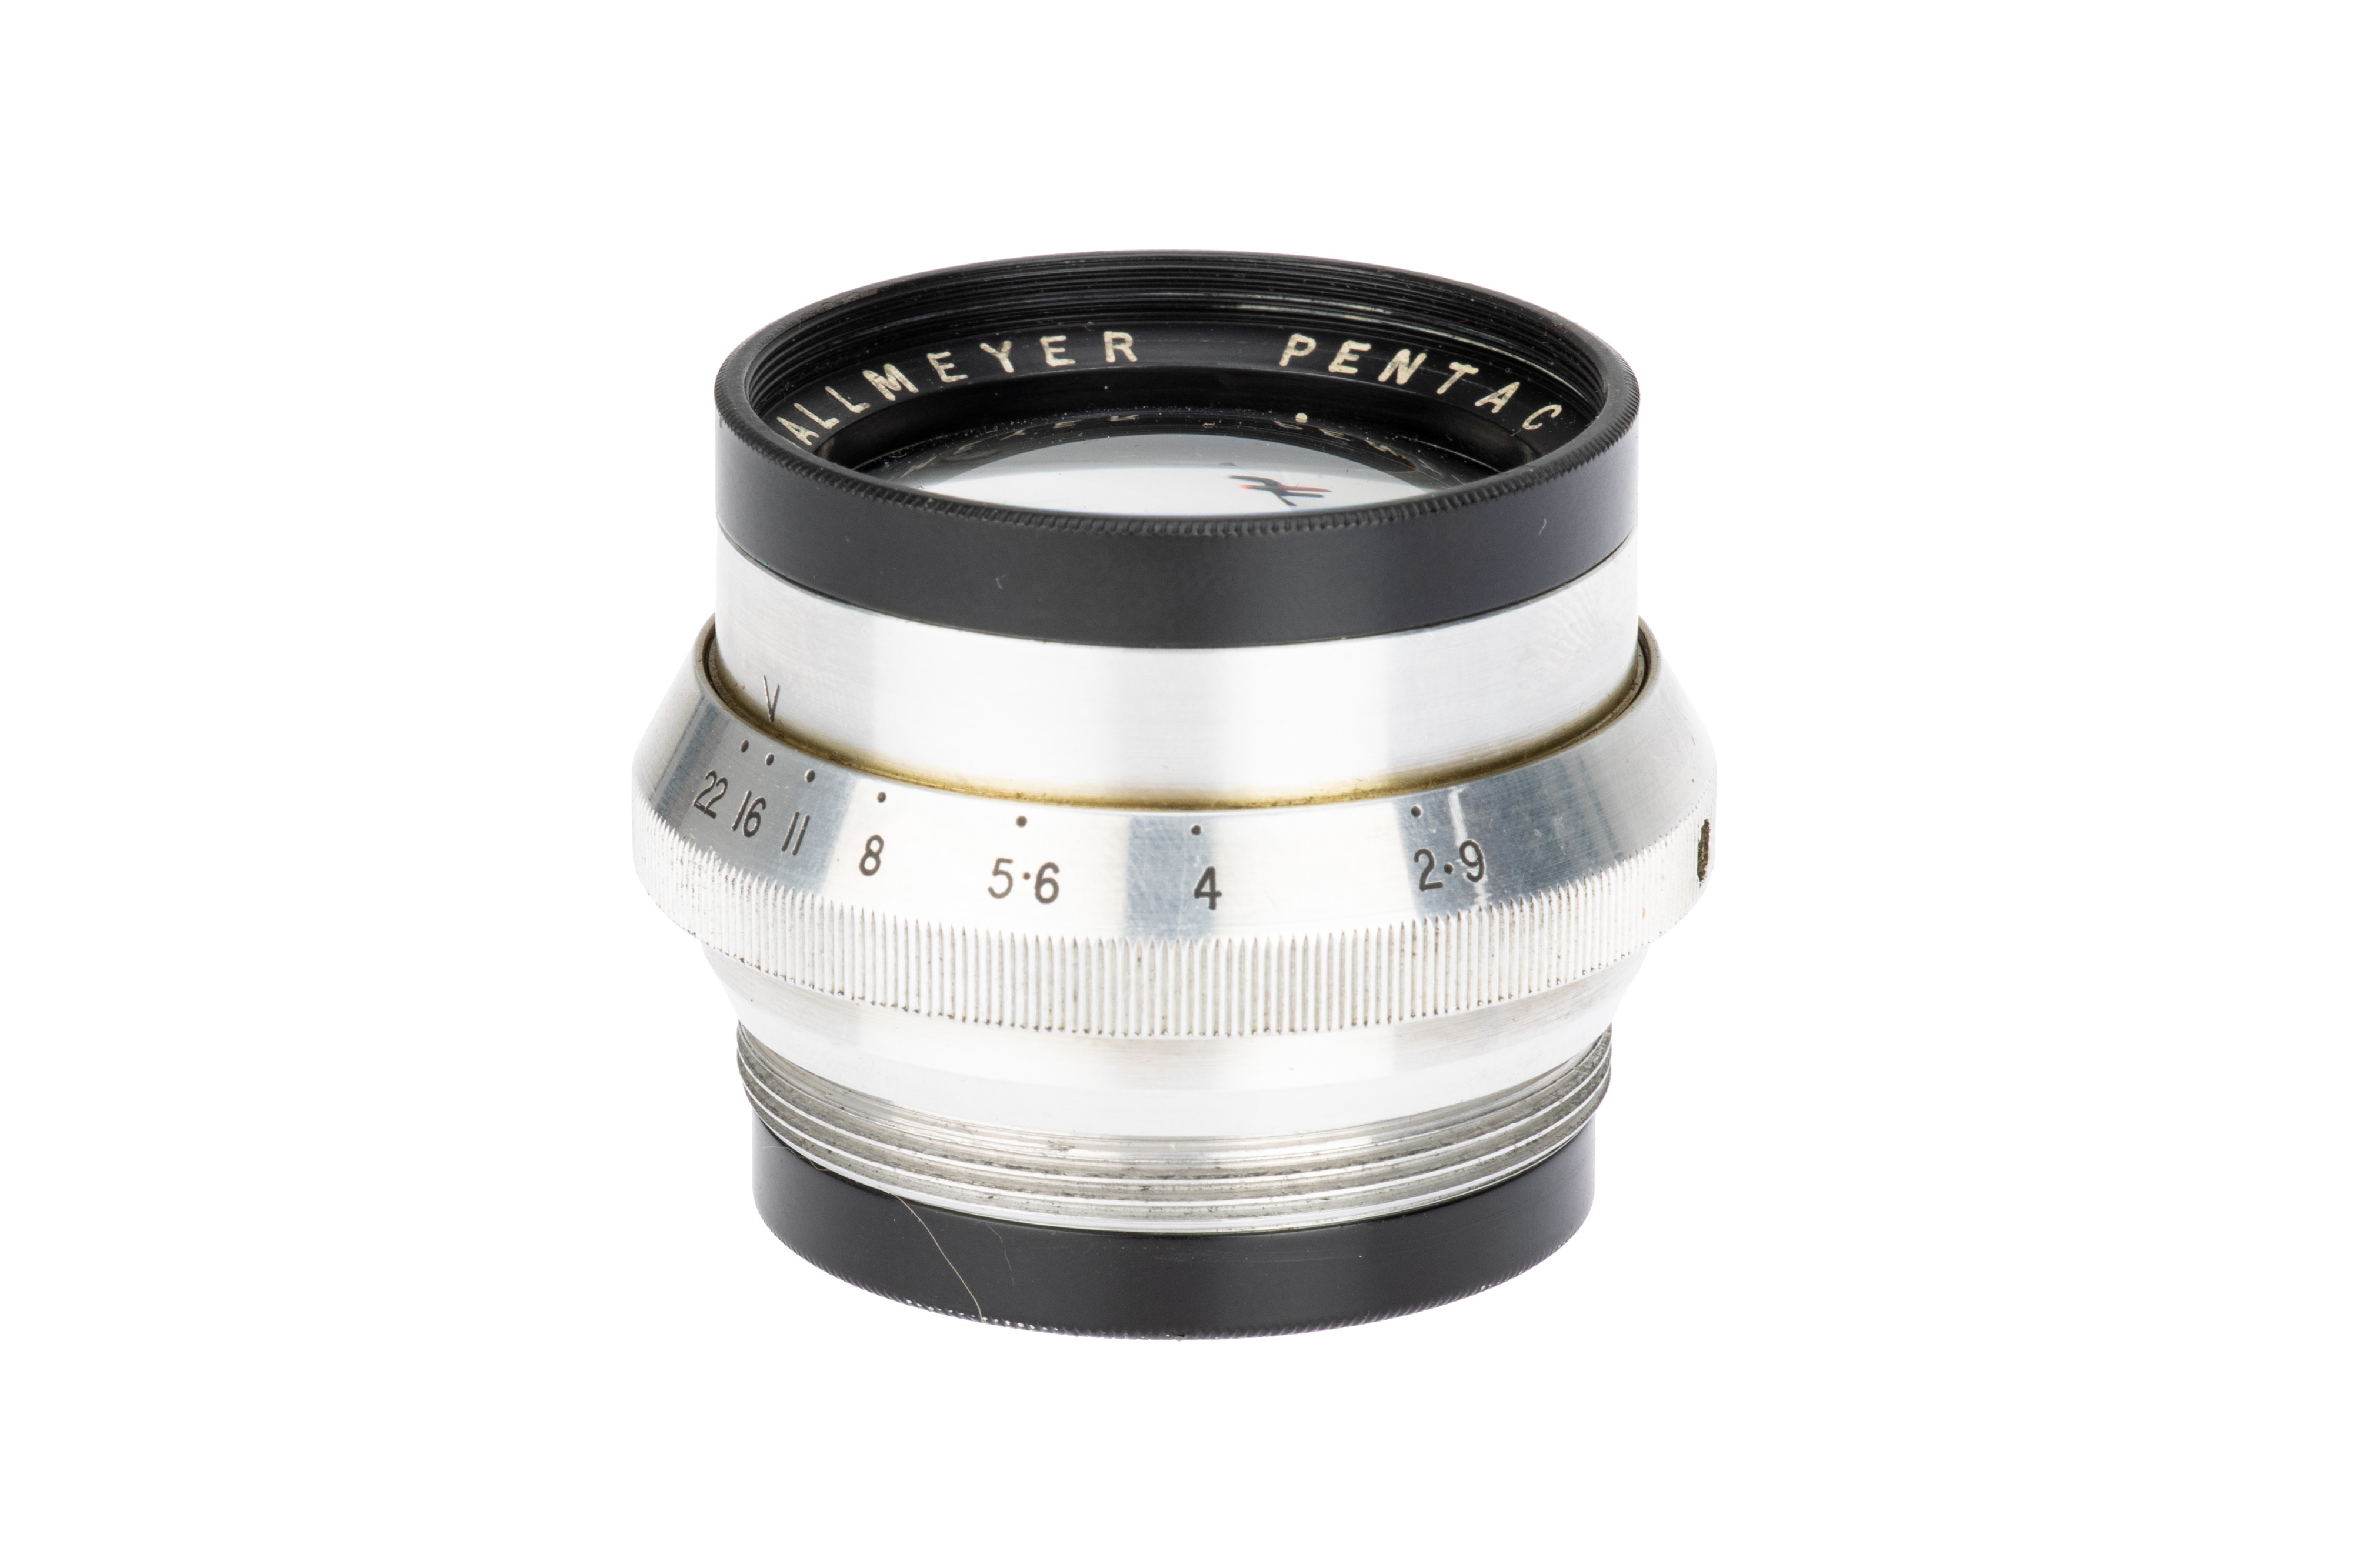 A Dallmeyer Pentac f/2.9 4" Lens,